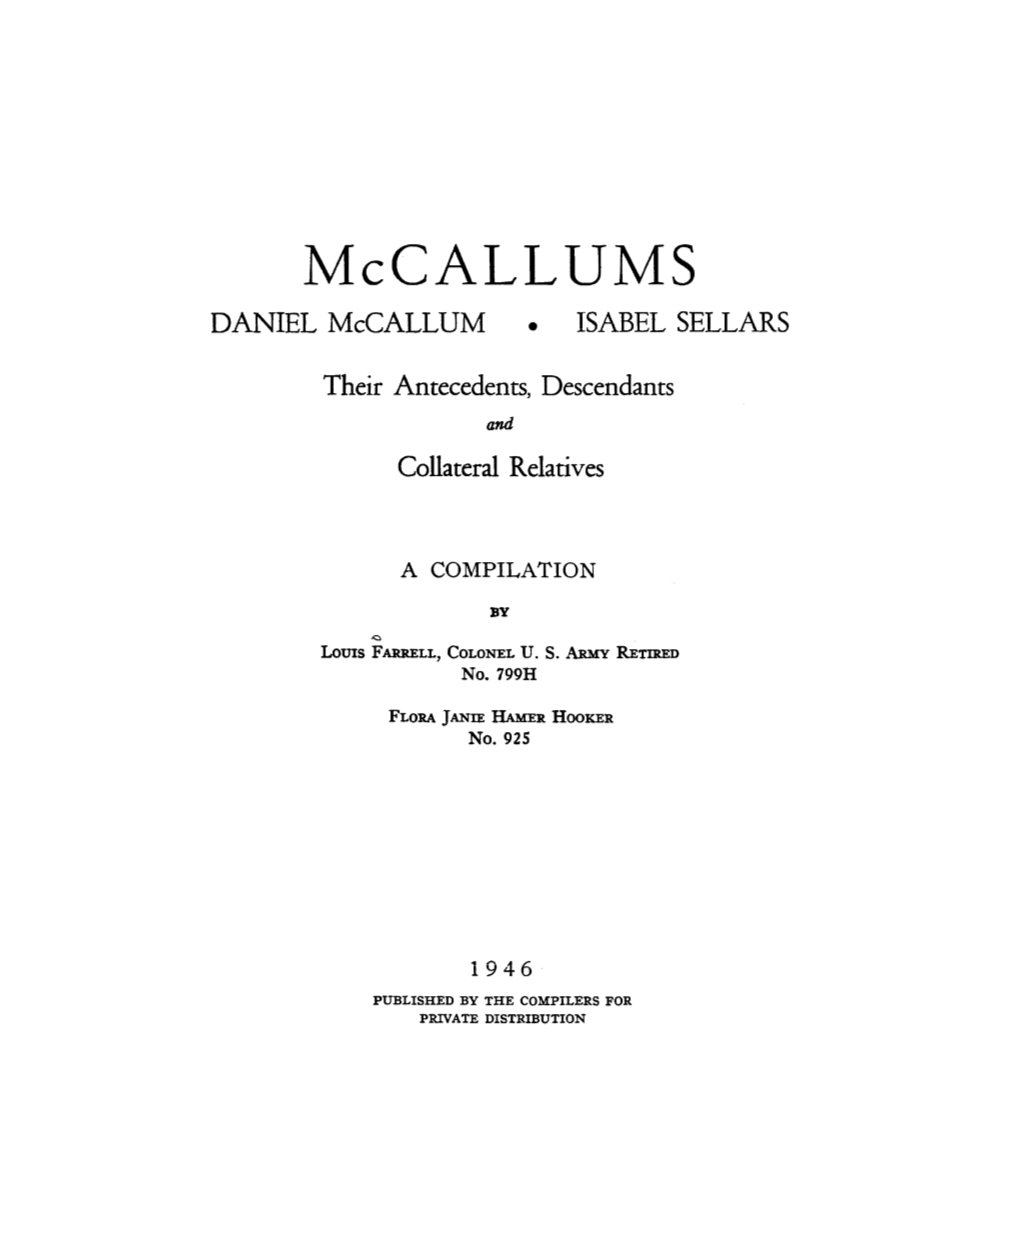 Mccallums DANIEL Mccallum • ISABEL SELLARS